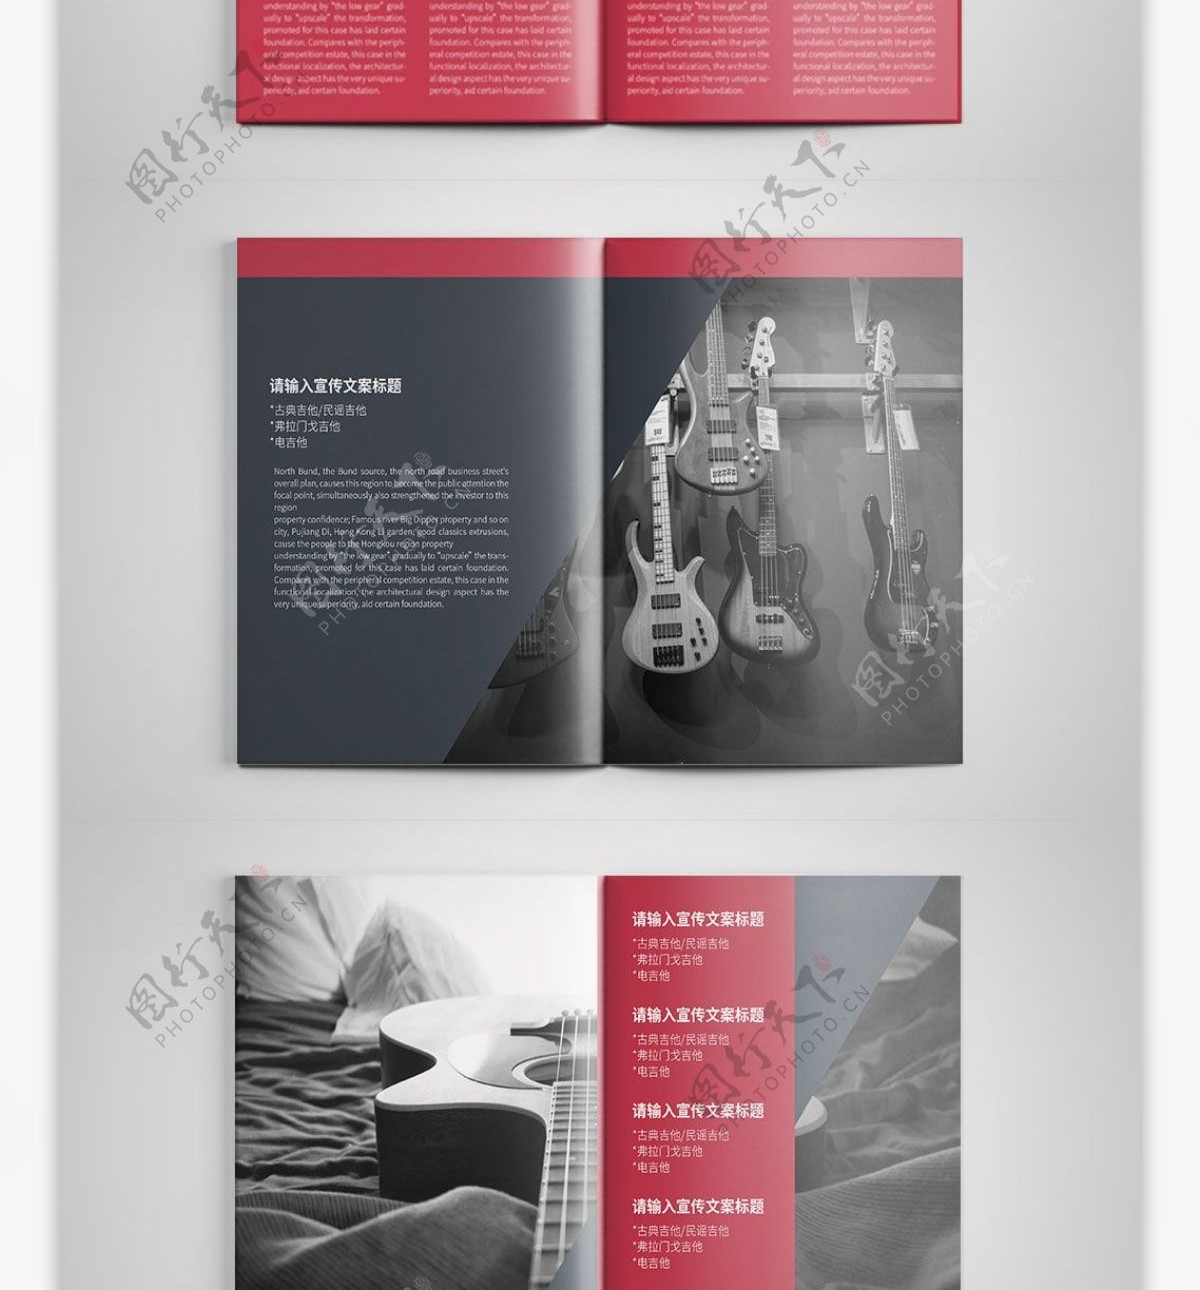 高档创意吉他宣传画册设计PSD模板